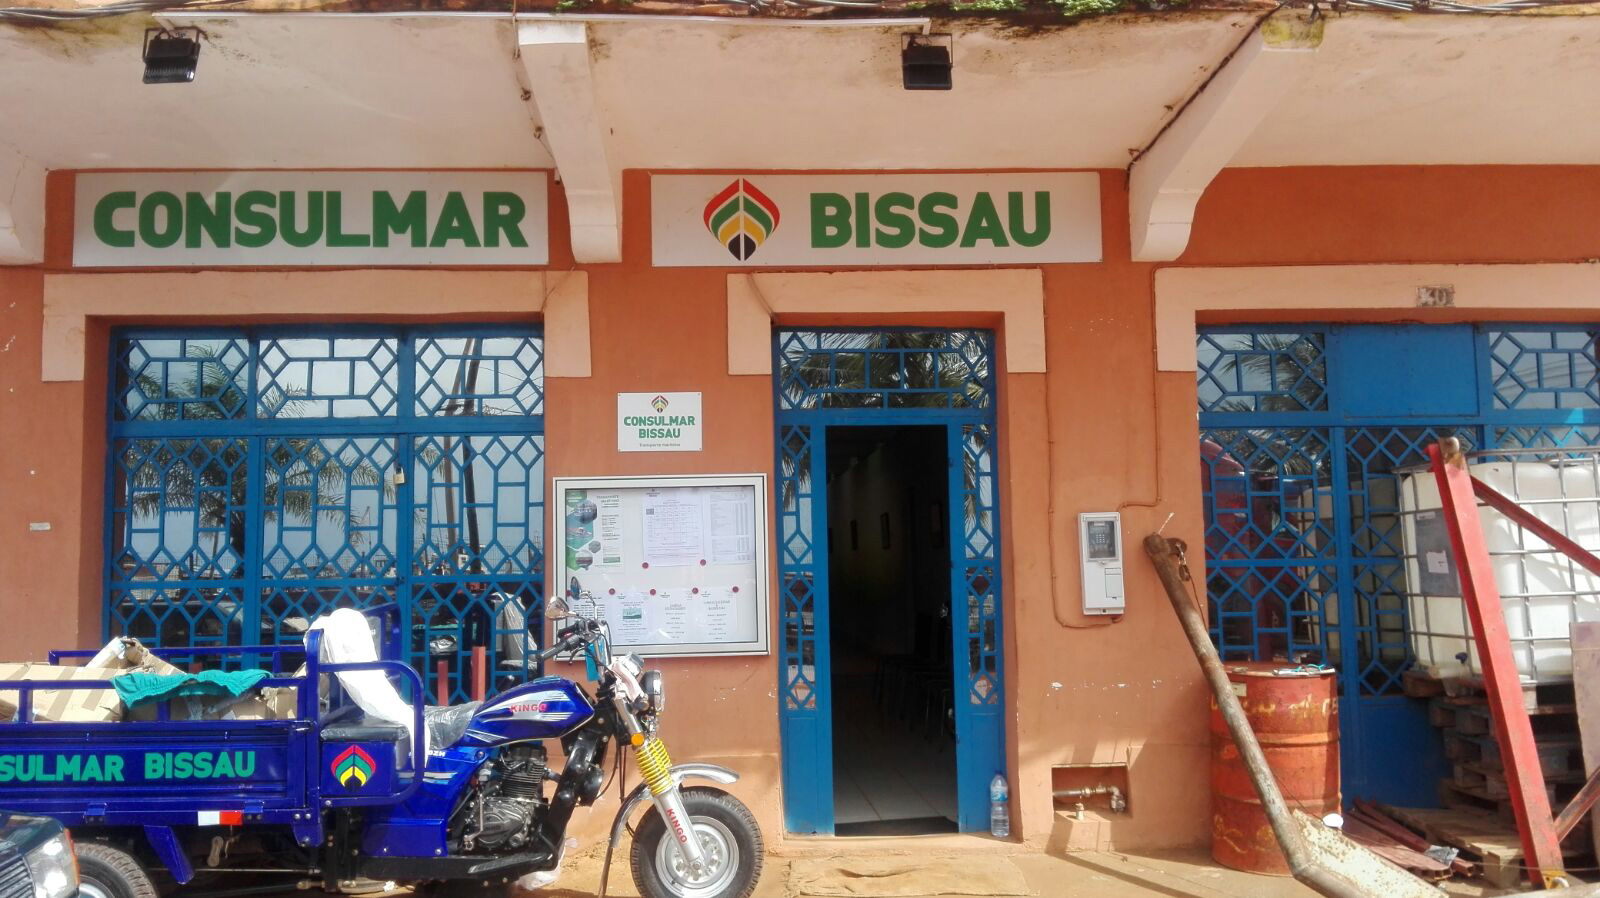 Oficina de Consulmar en Bissau